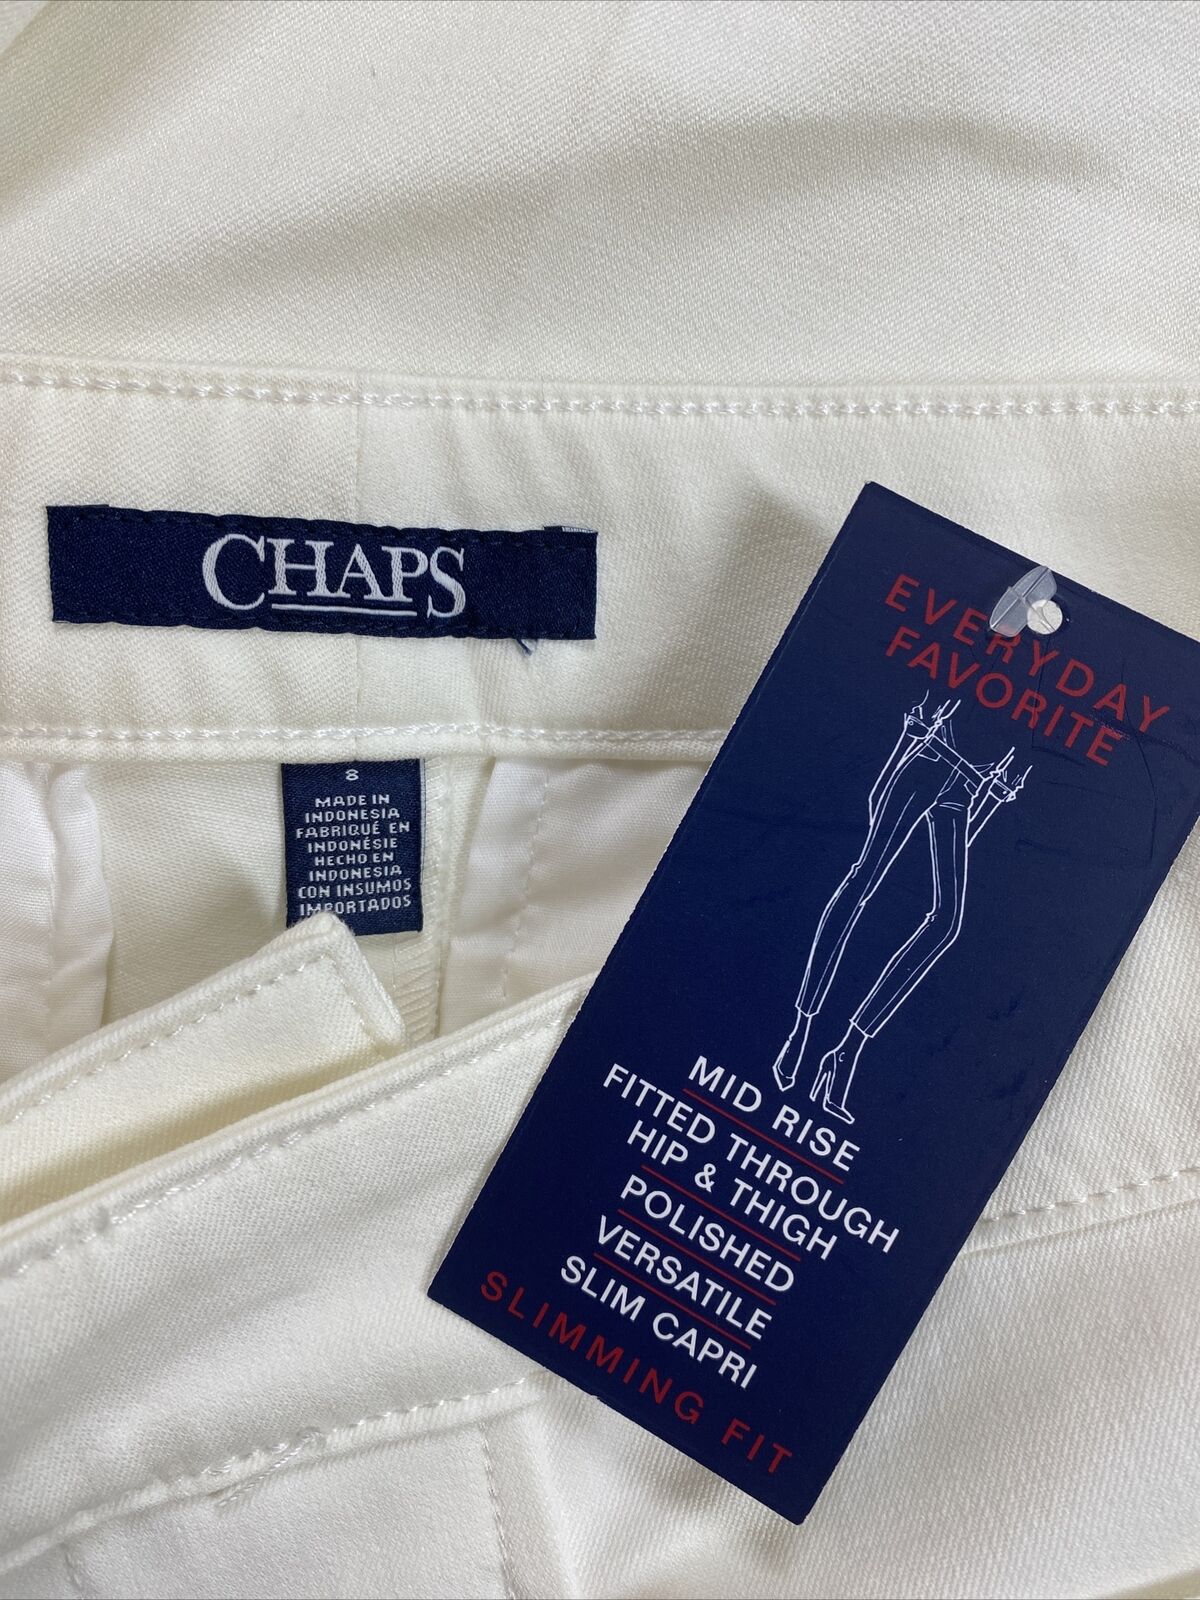 NEW Chaps Women's White Cotton Blend Stretch Crop Capri Pants - 8